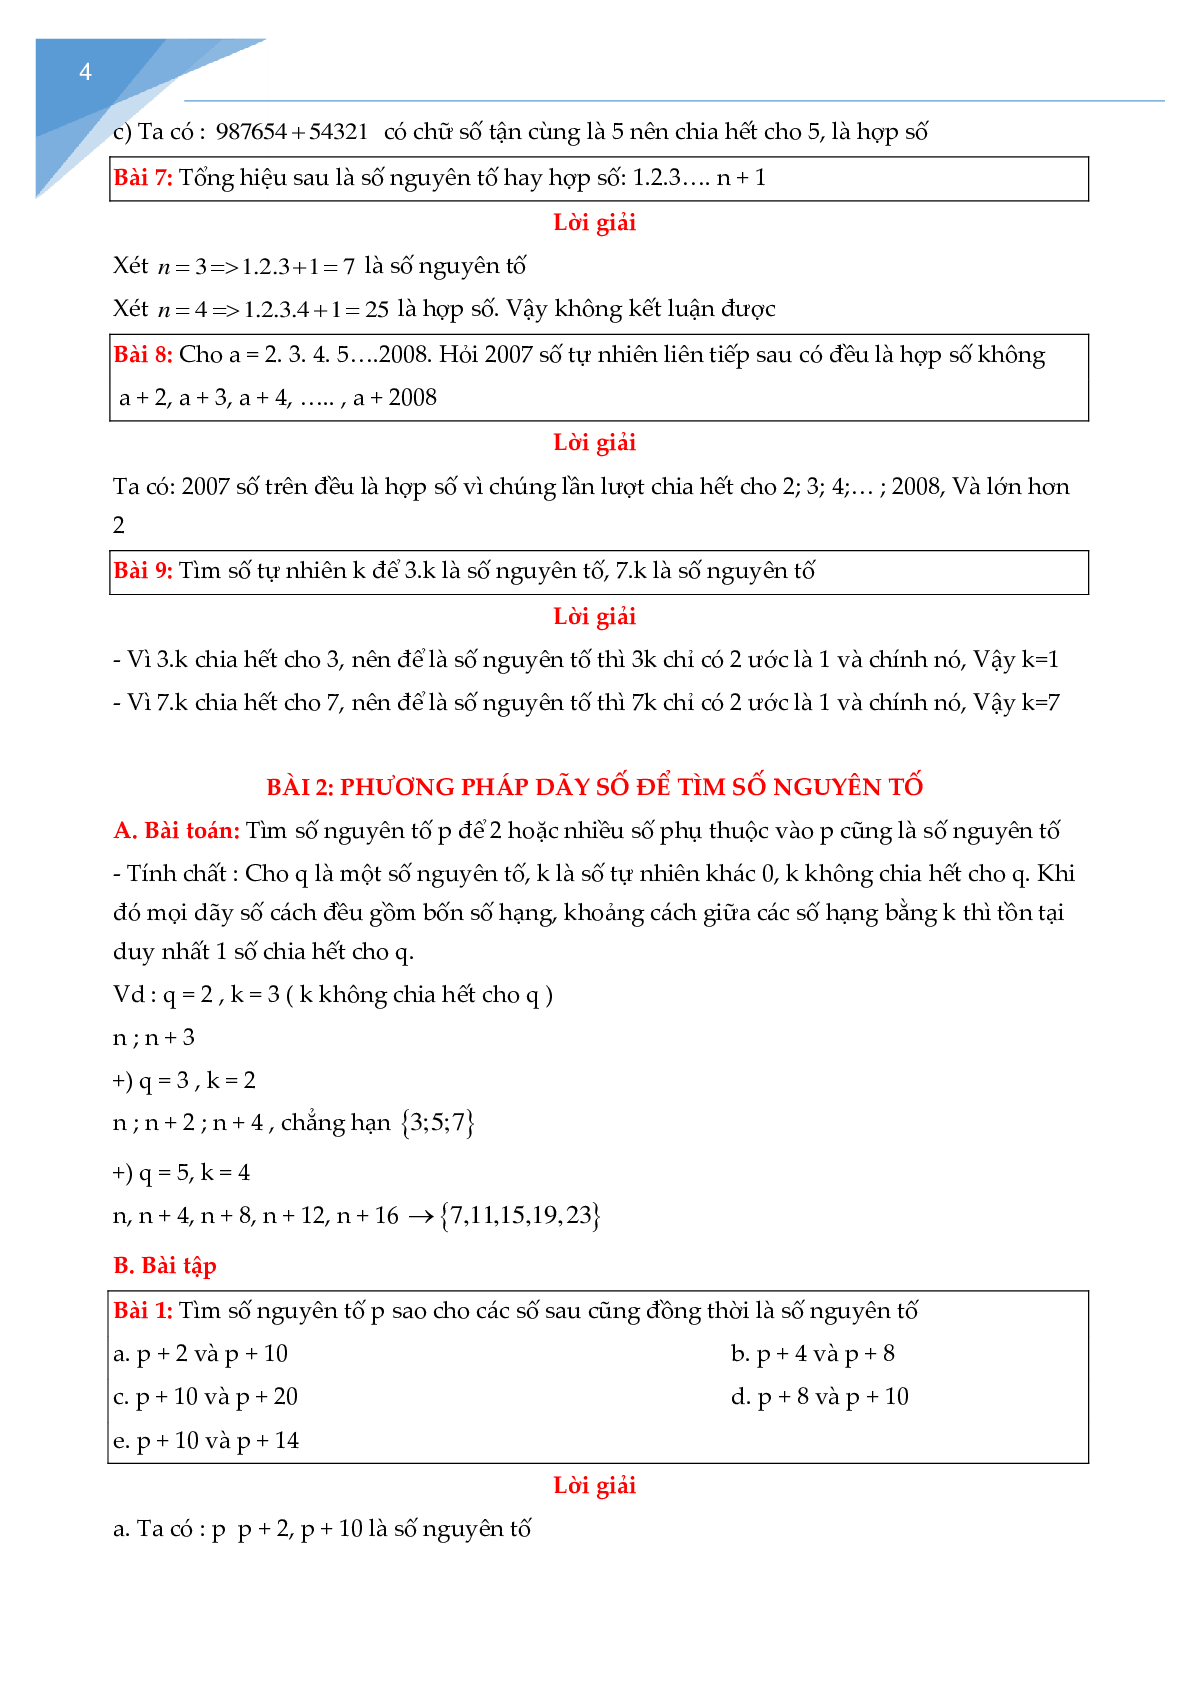 Chuyên đề số nguyên tố, hợp số (trang 4)